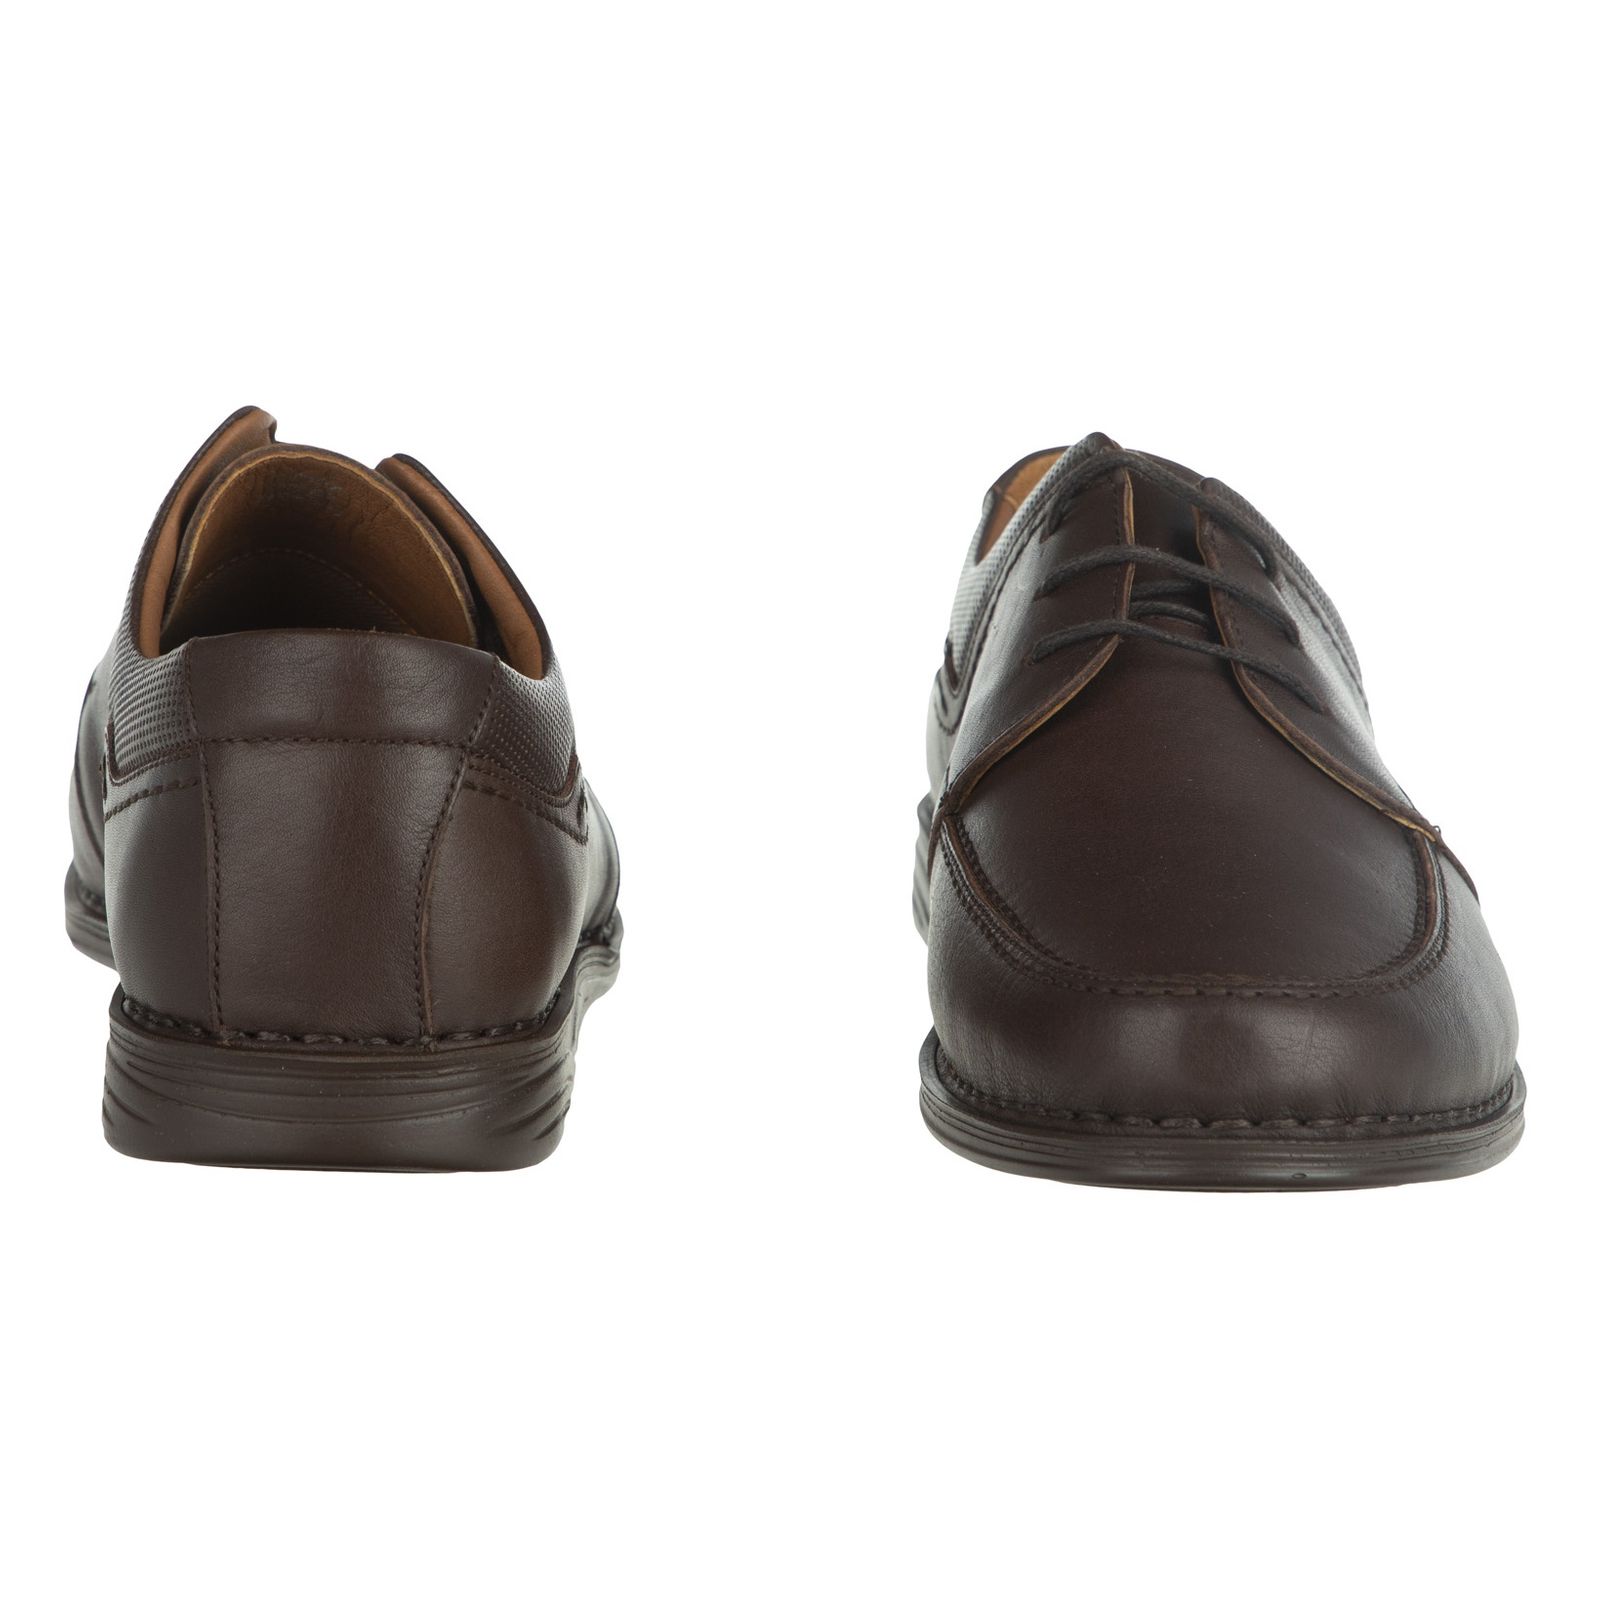 کفش مردانه پولاریس مدل 100296942-103 - قهوه ای - 4